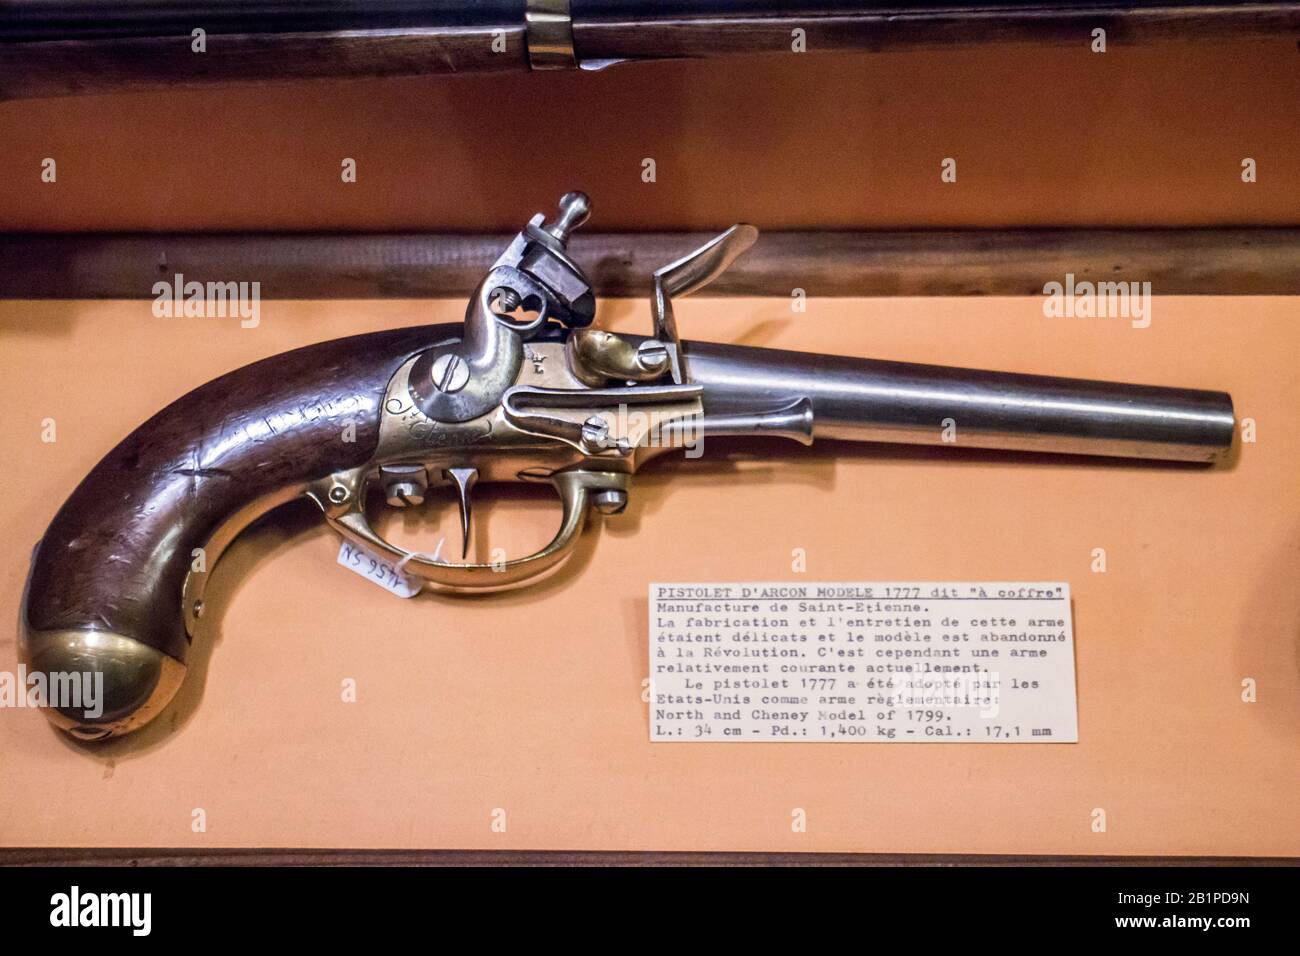 Musée de l'Emperi,Salon-de-Provence : Pommer pistol 1777 pistolet d'arçon. Stock Photo